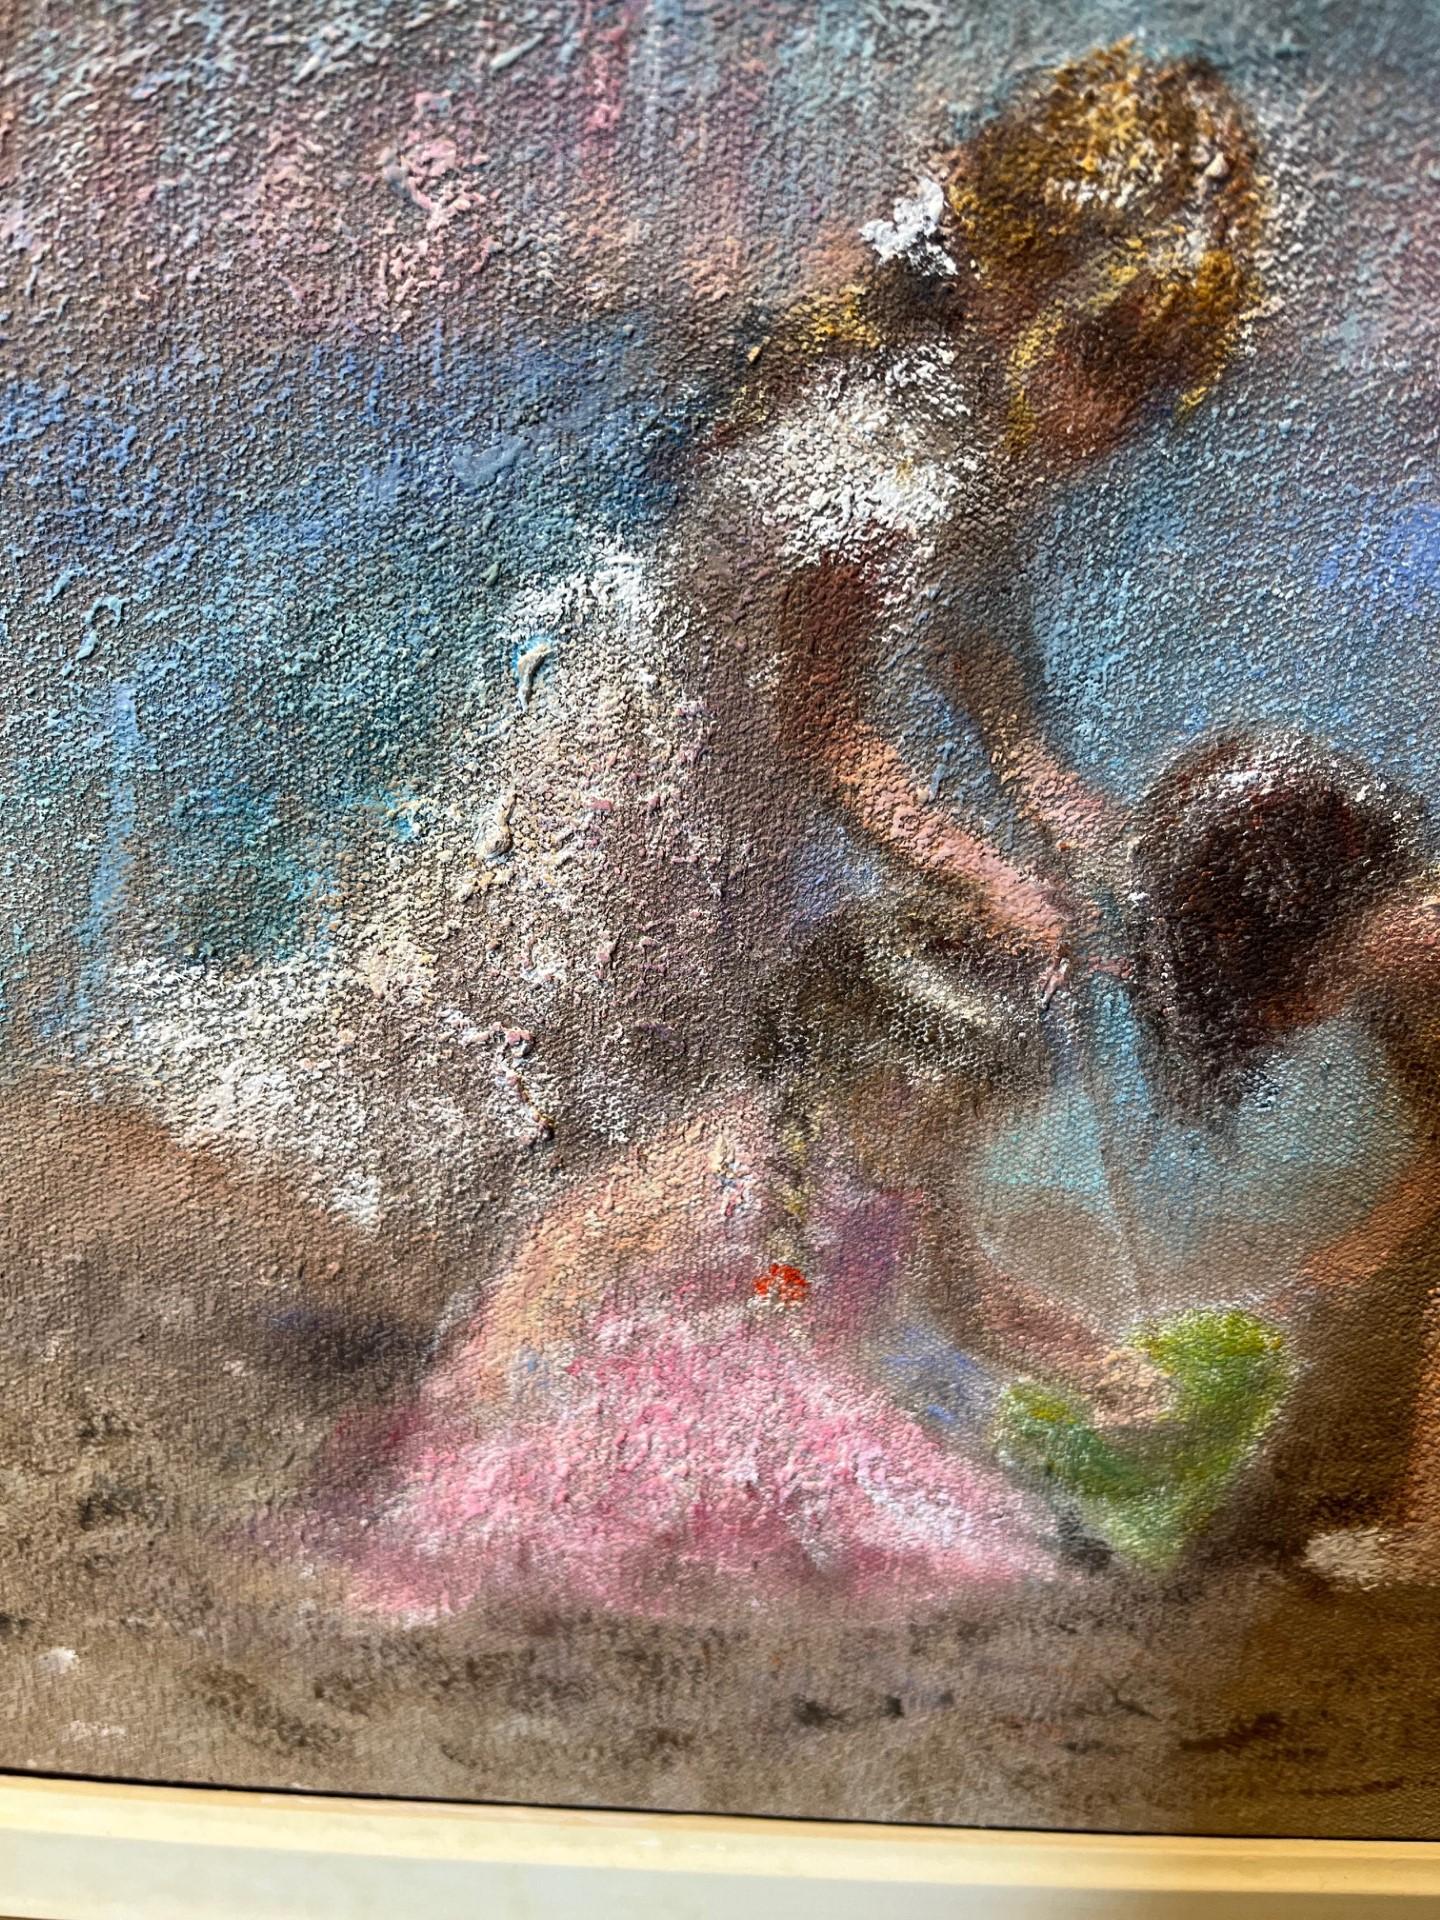 Trois enfants jouant des sables de plage, peinture à l'huile impressionniste moyenne - Post-impressionnisme Painting par Rene Jerome Legrand